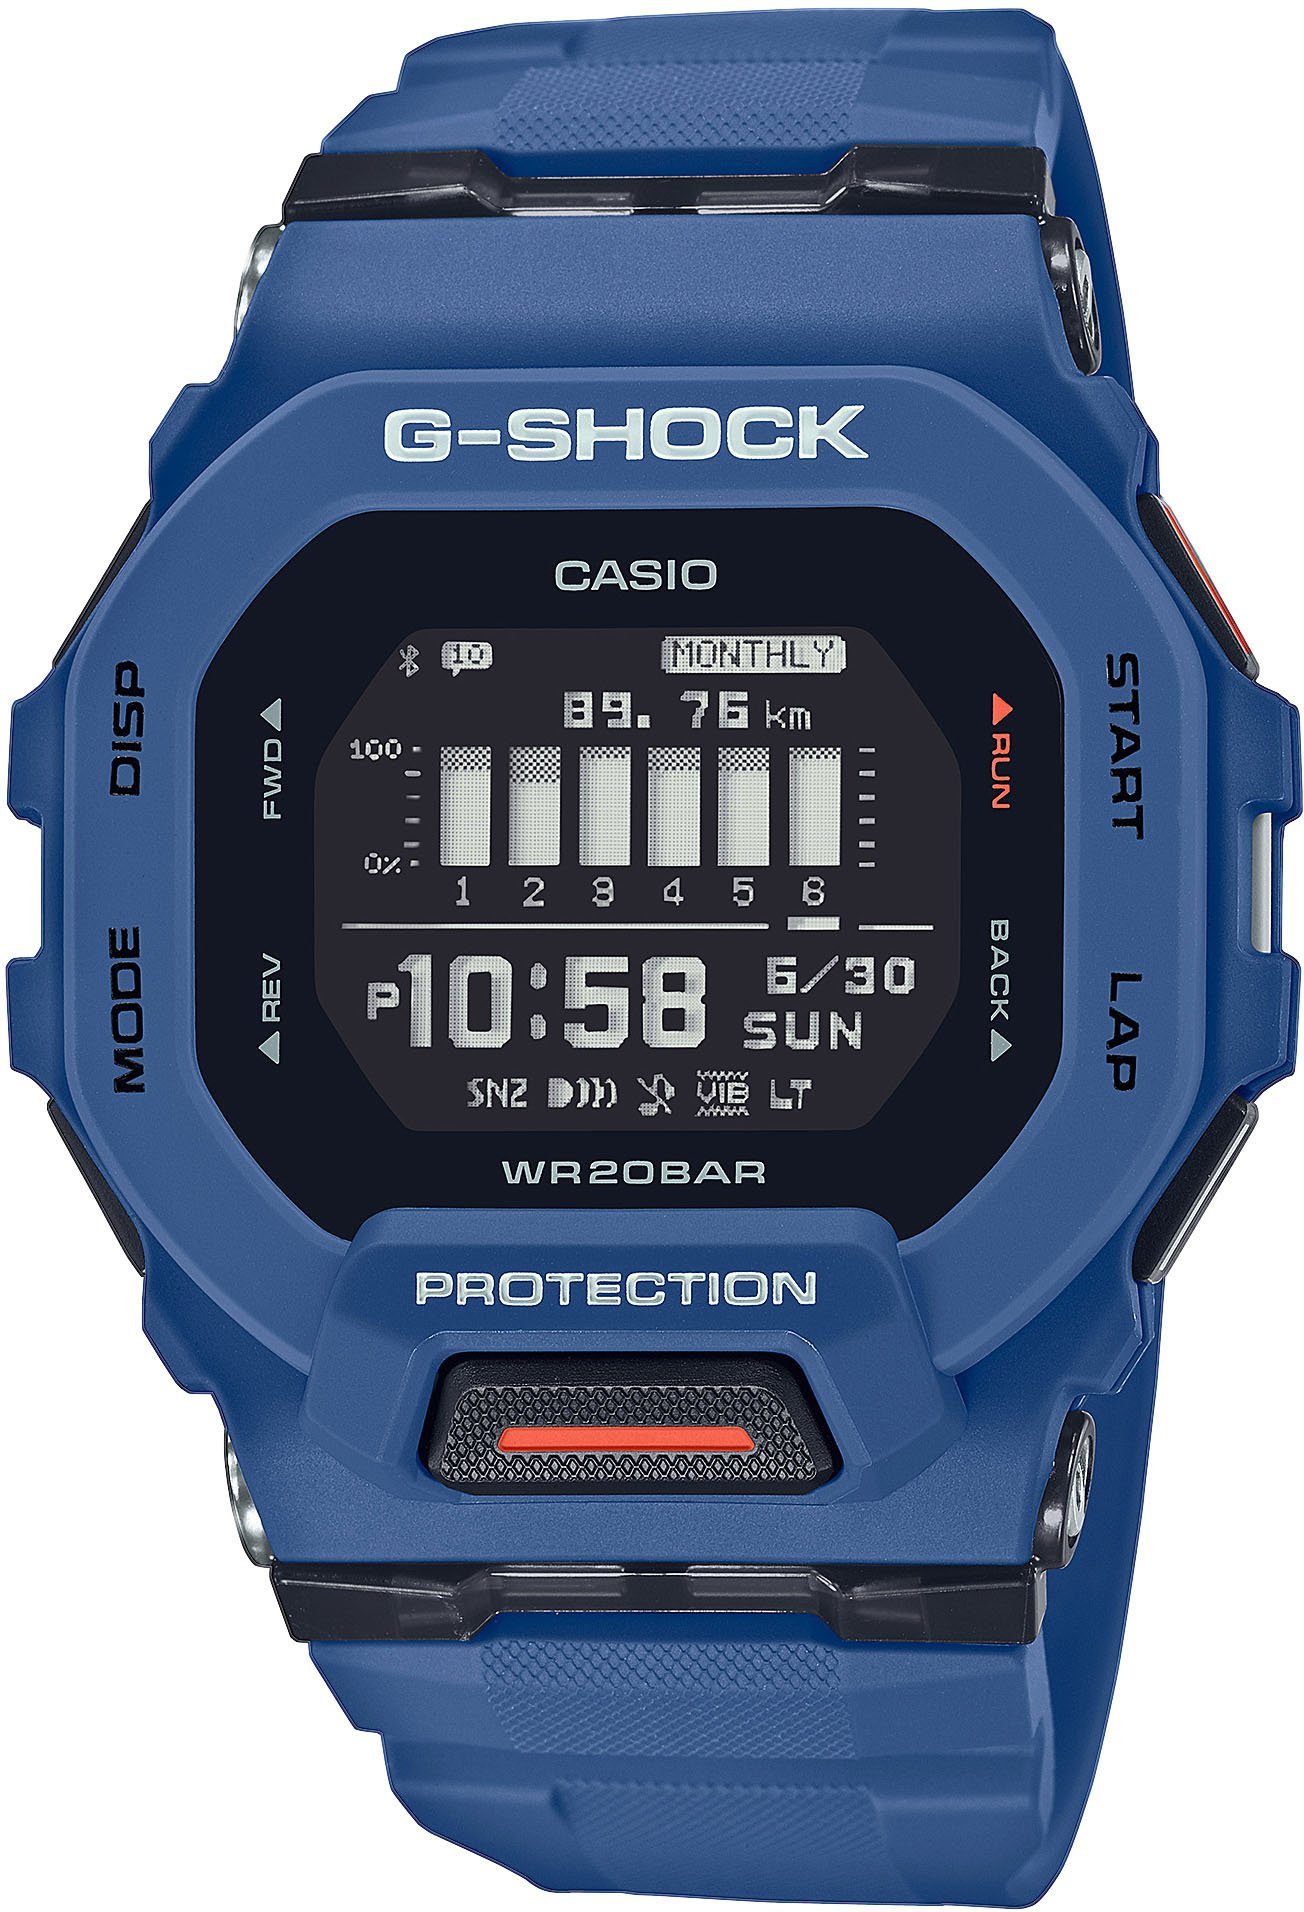 CASIO G-SHOCK Smartwatch GBD-200-2ER